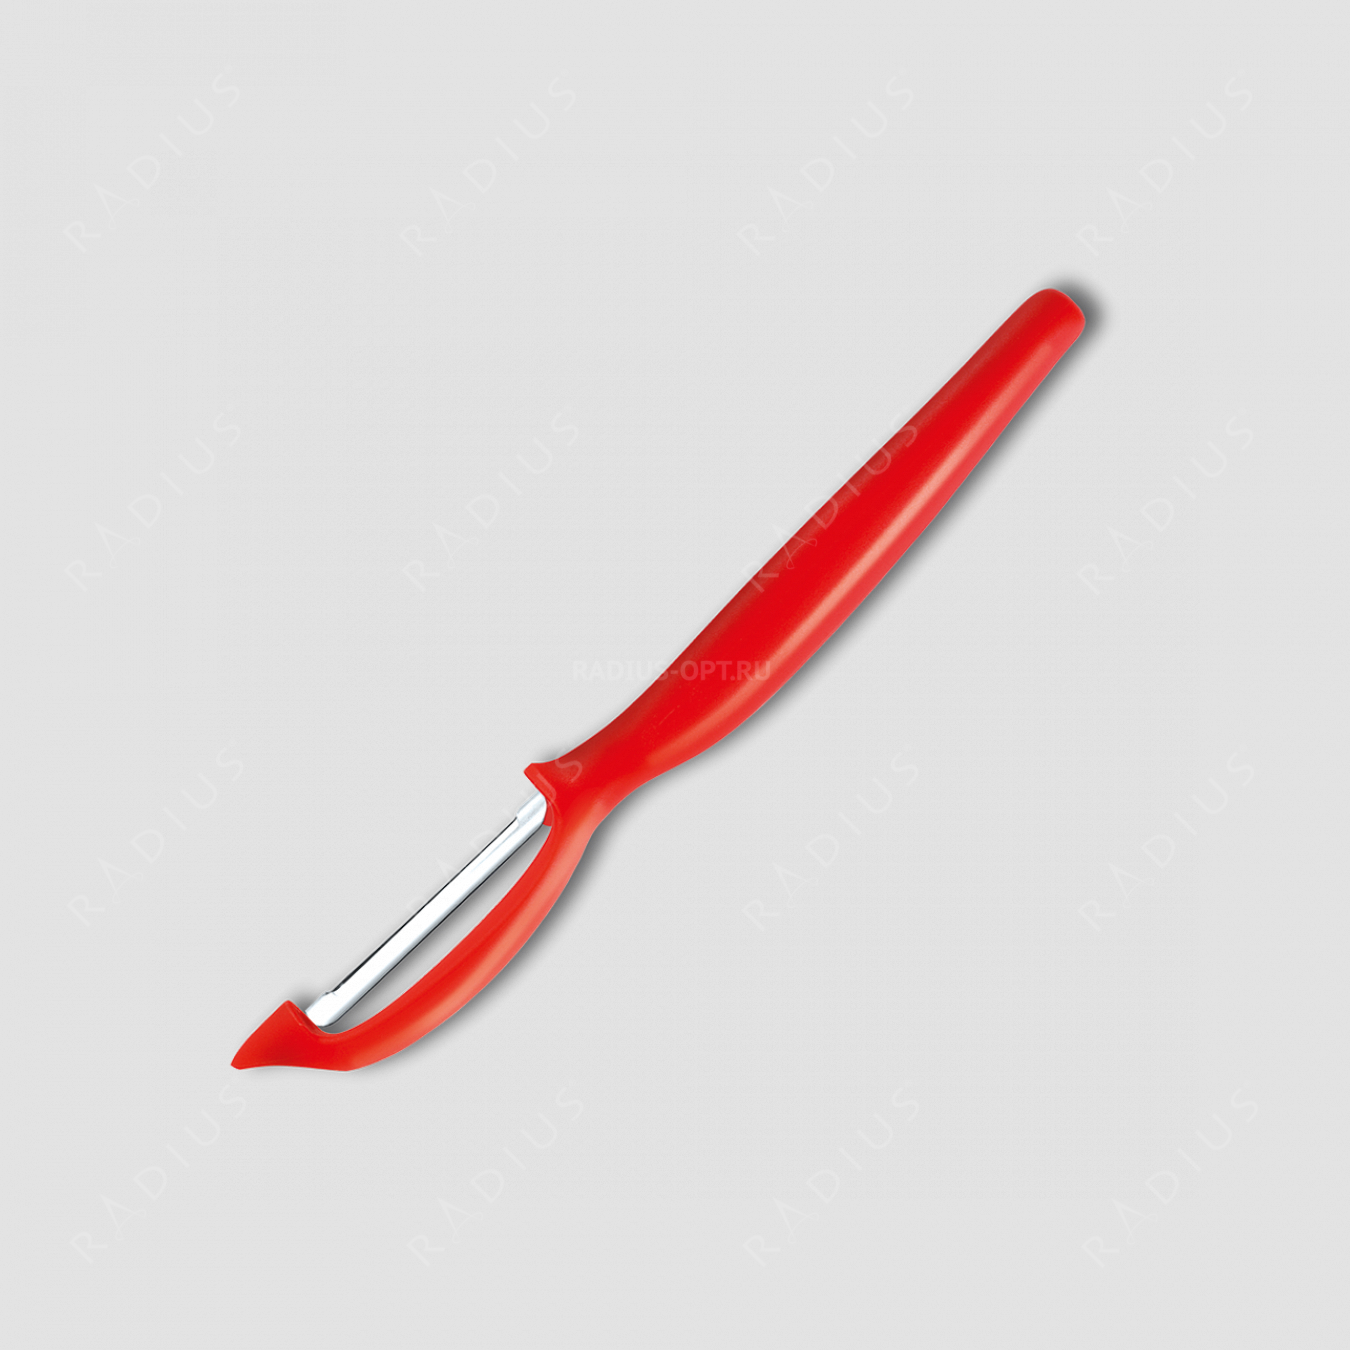 Нож кухонный для чистки овощей и фруктов, с плавающим лезвием, рукоять красная, серия Sharp Fresh Colourful, WUESTHOF, Золинген, Германия